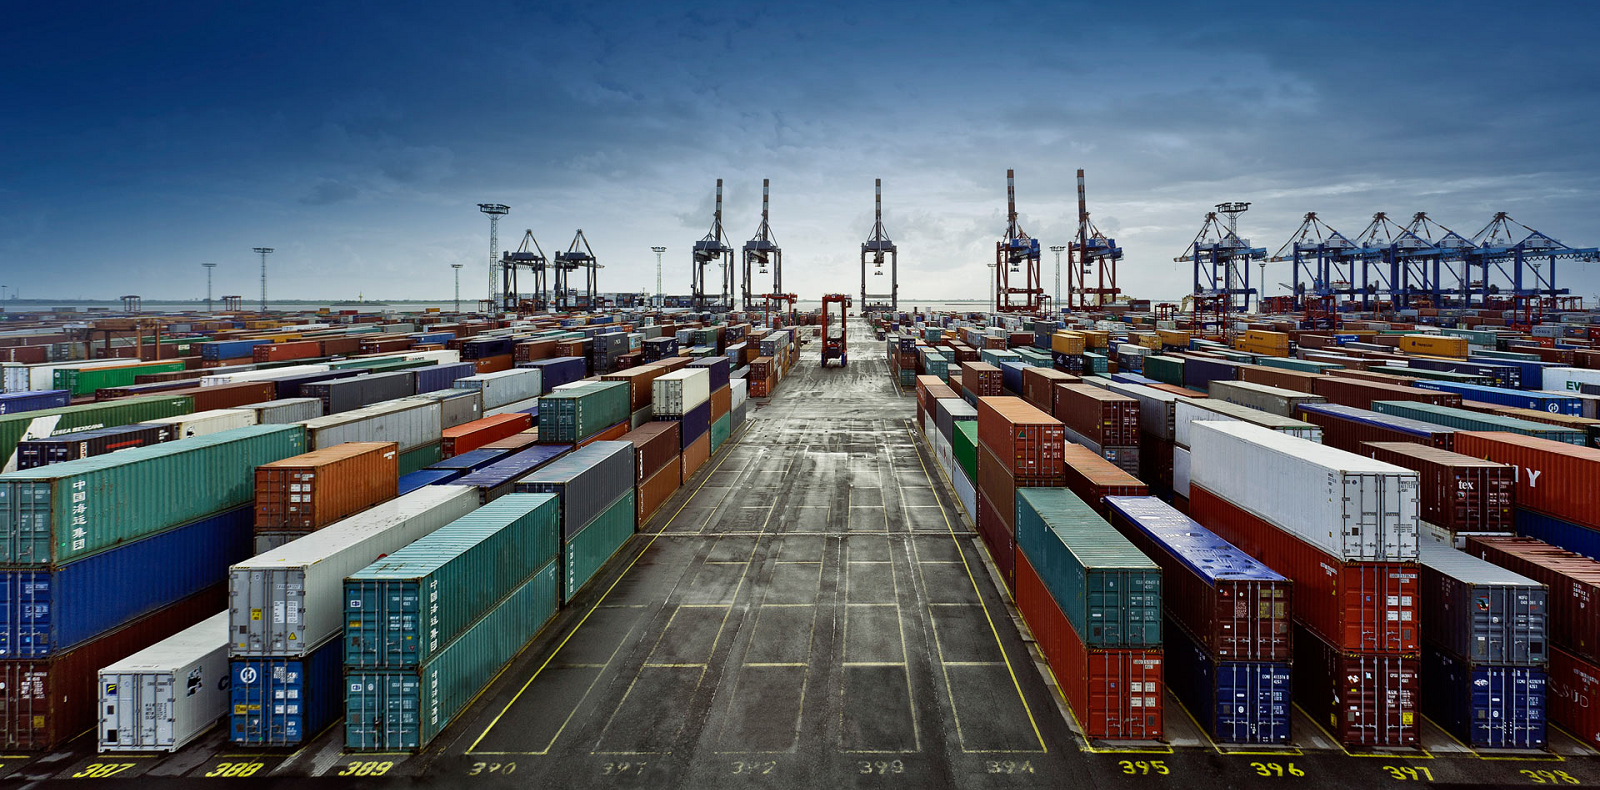 SDV Cargo предоставляет своим клиентам услуги по временному хранению грузов. Все грузы, поступившие на склады компании в процессе транспортировки, будут надежно сохранены до их переформирования для последующей отгрузки по маршруту или до получения владельцем...